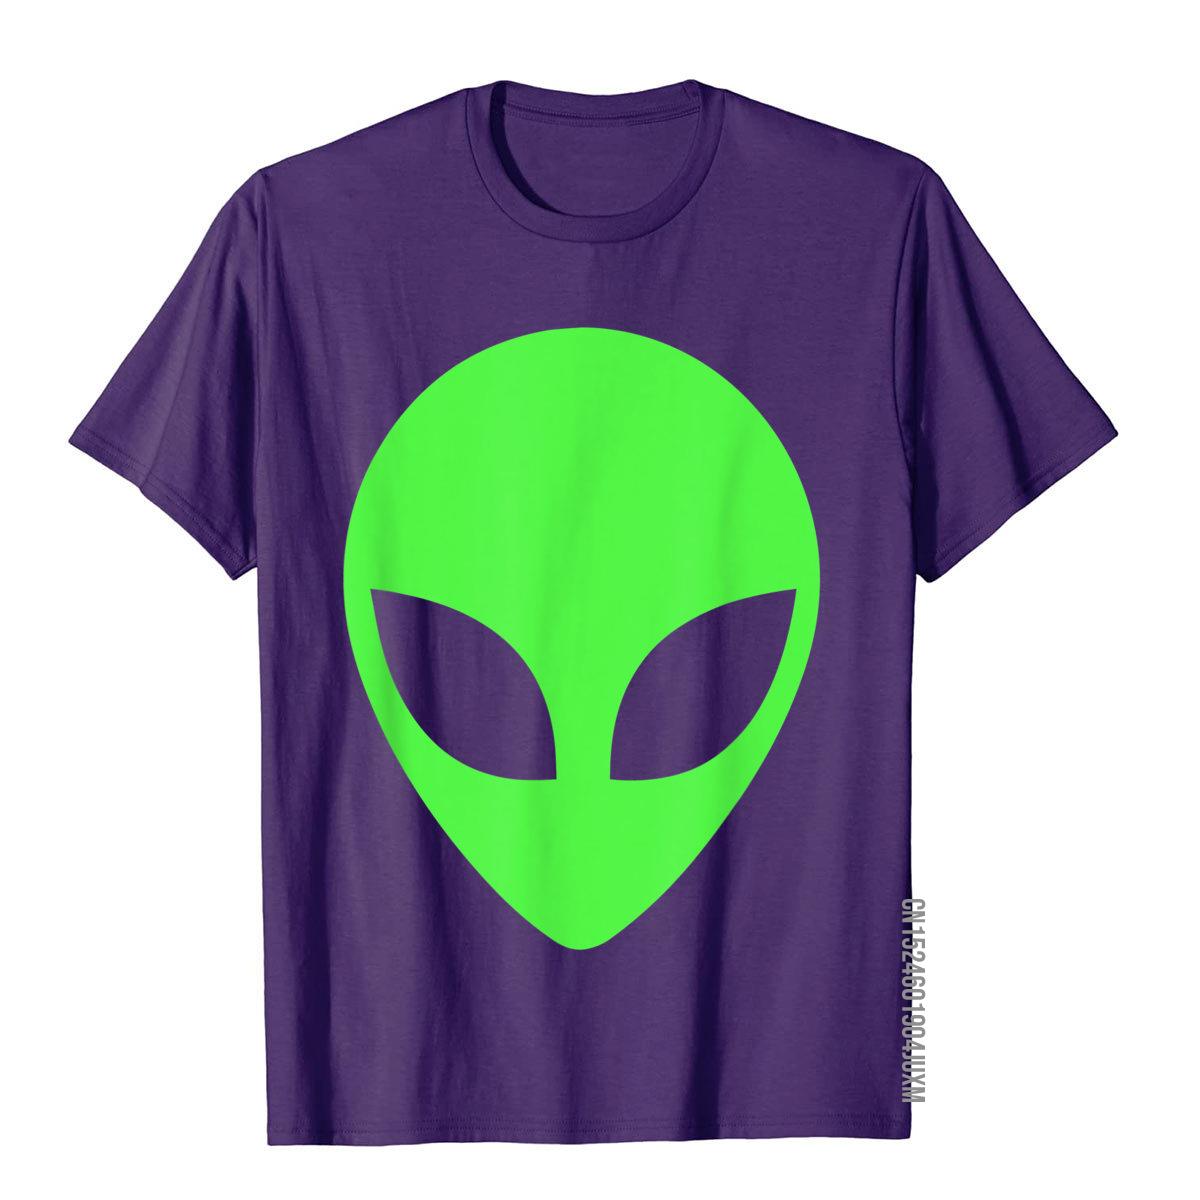 Green Alien Head 90s Style Funny Alien T-Shirt__97A3651purple